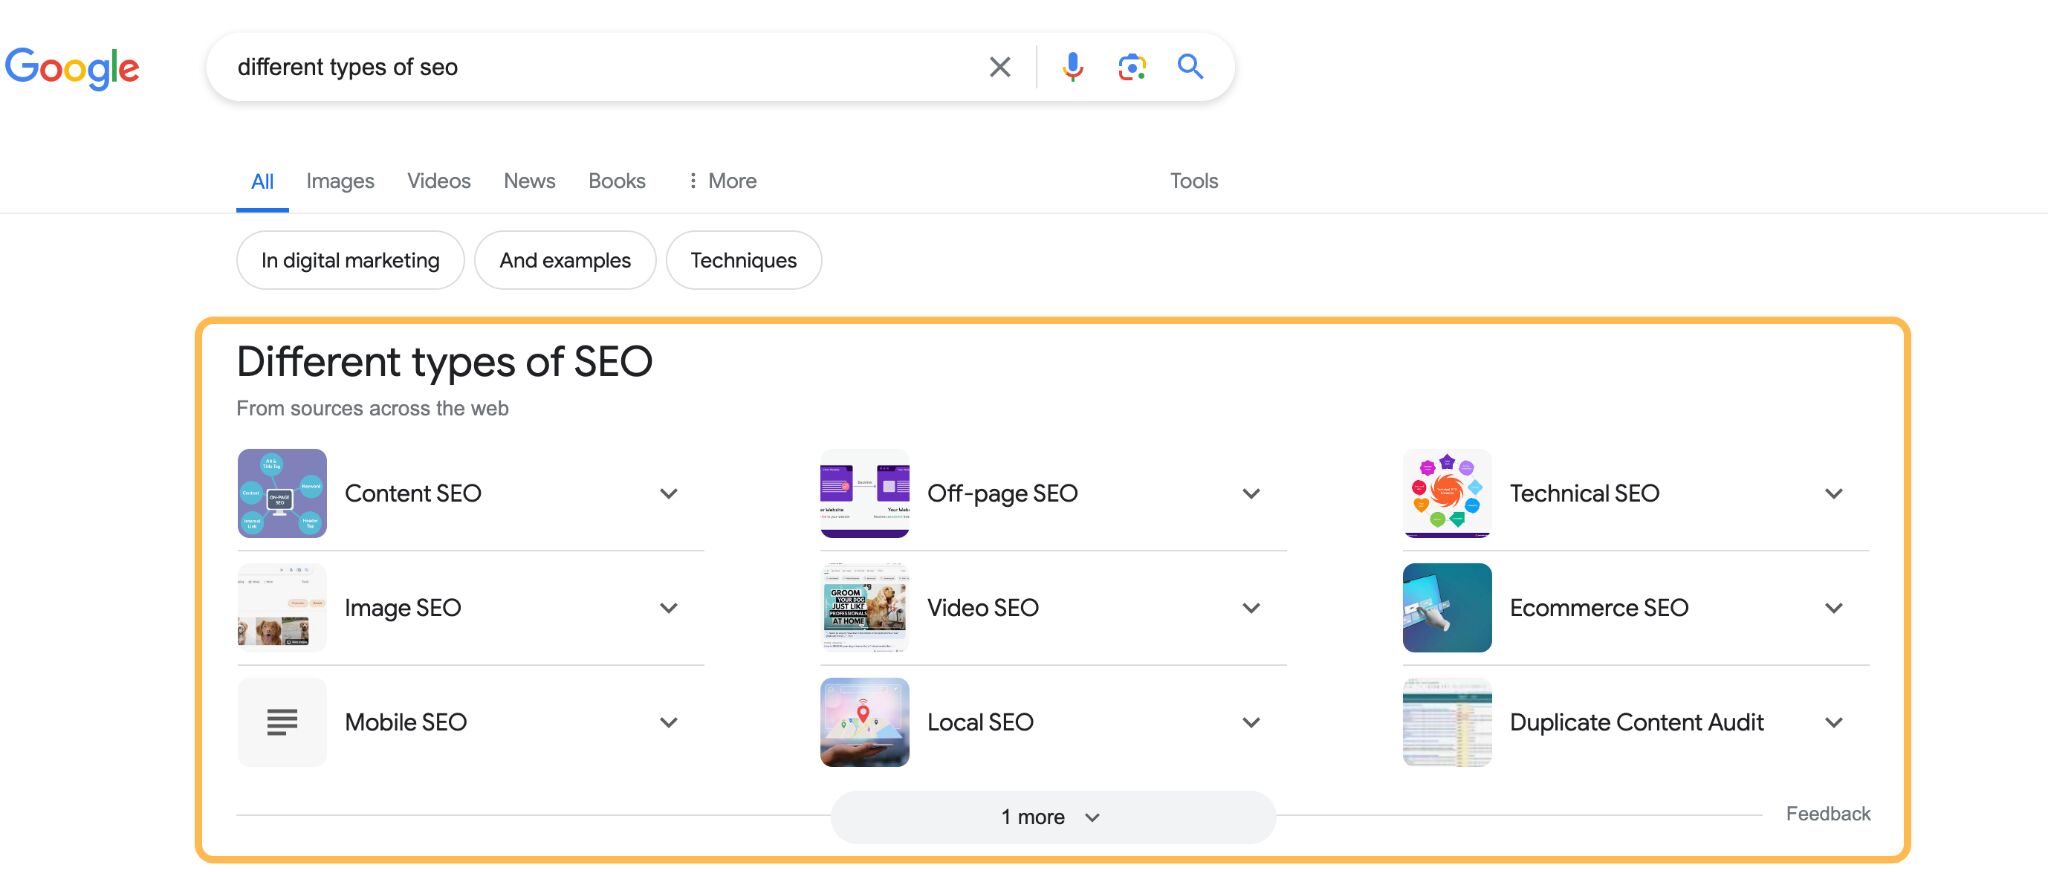 Zero Click searches example, via Google.com